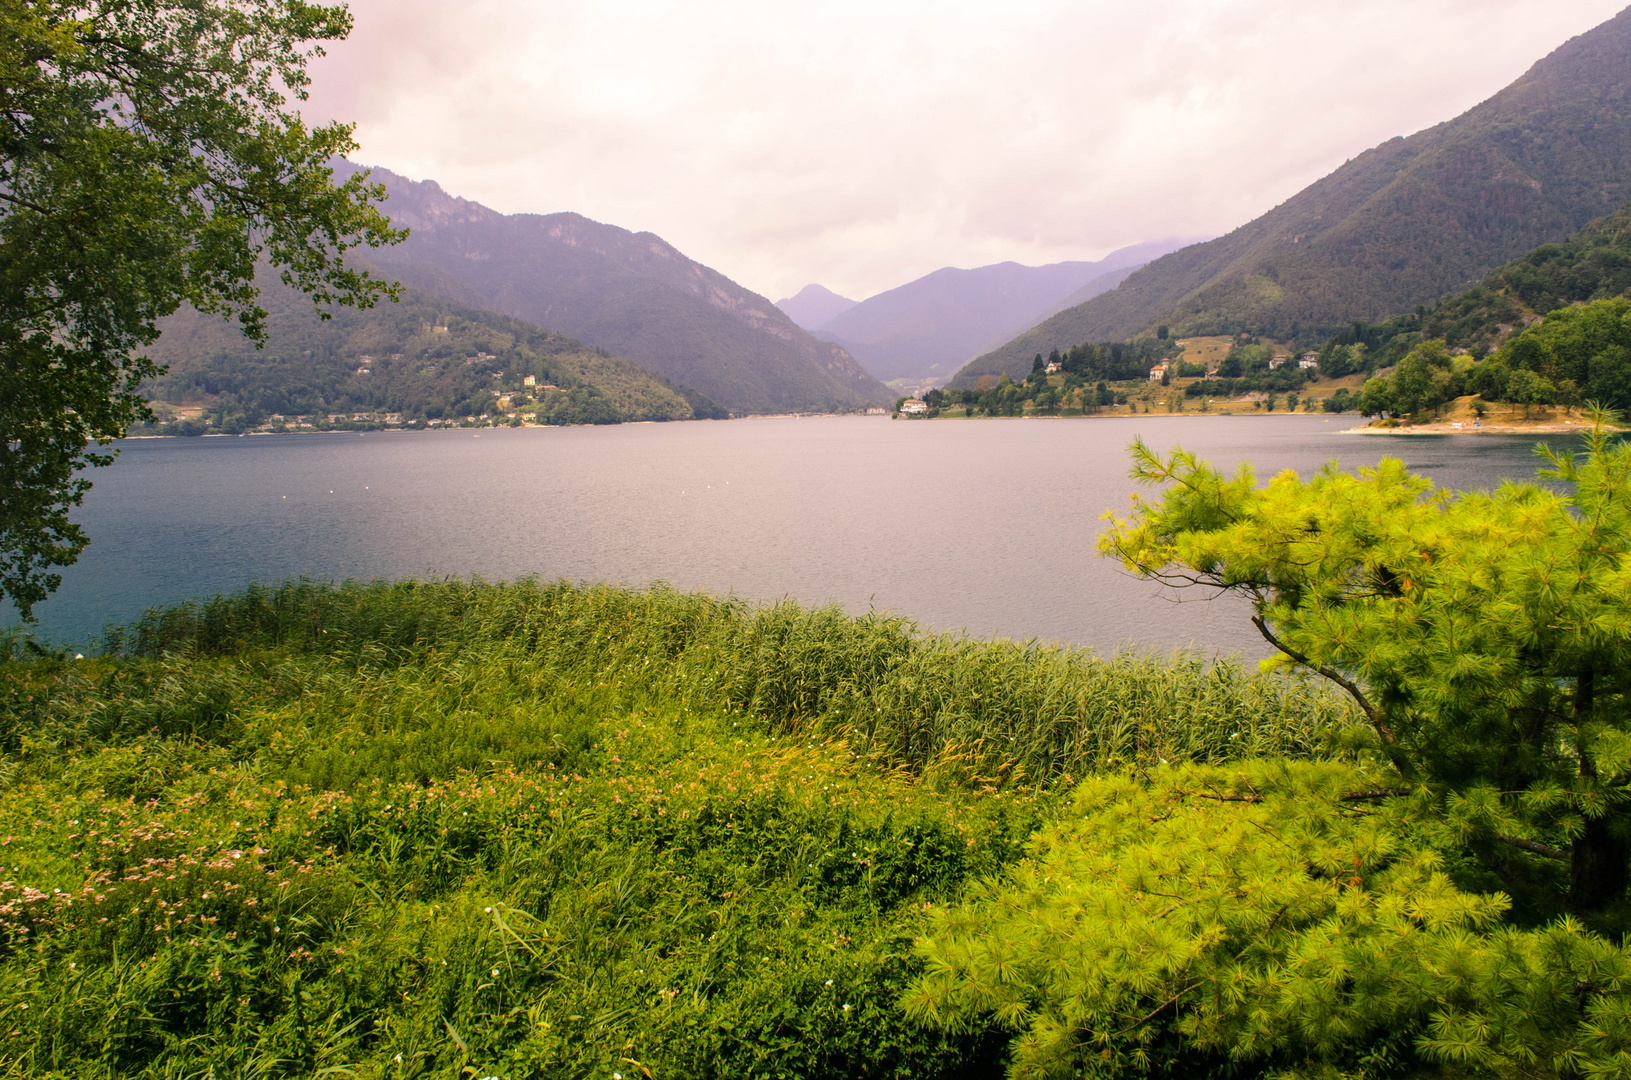 Erster Blick auf dem Lago di Ledro